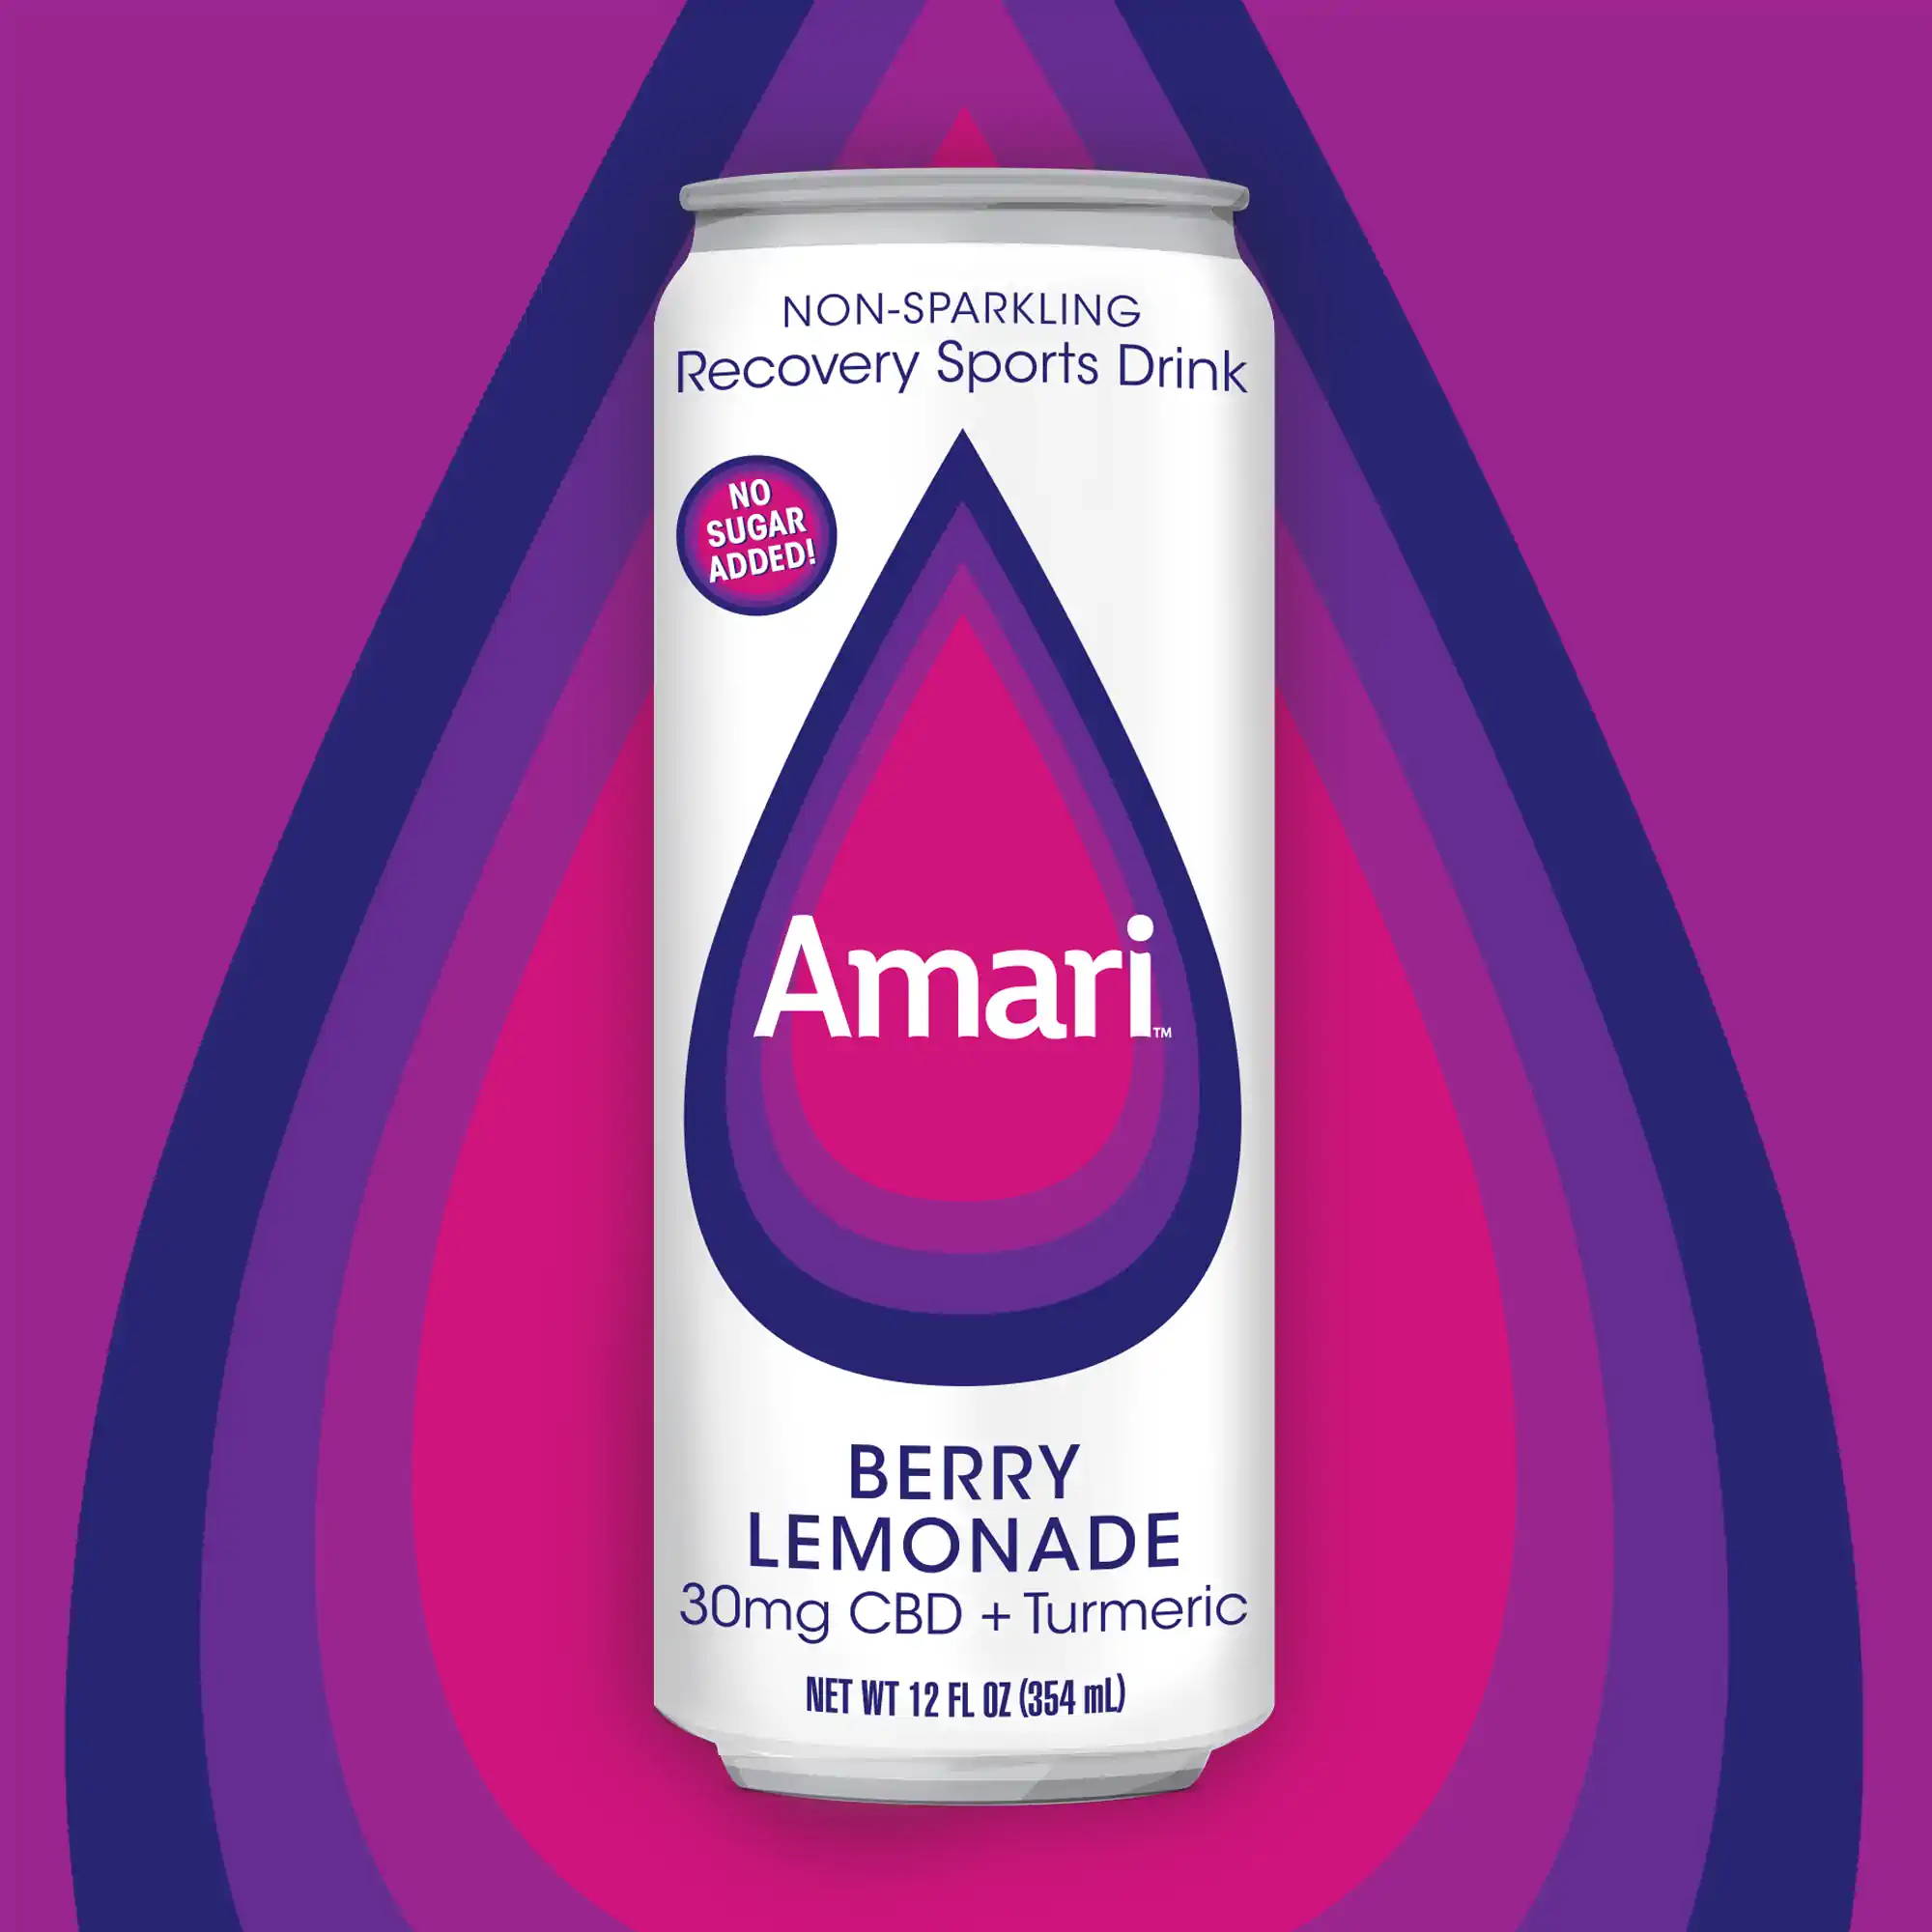 Can of Berry Lemonade Amari